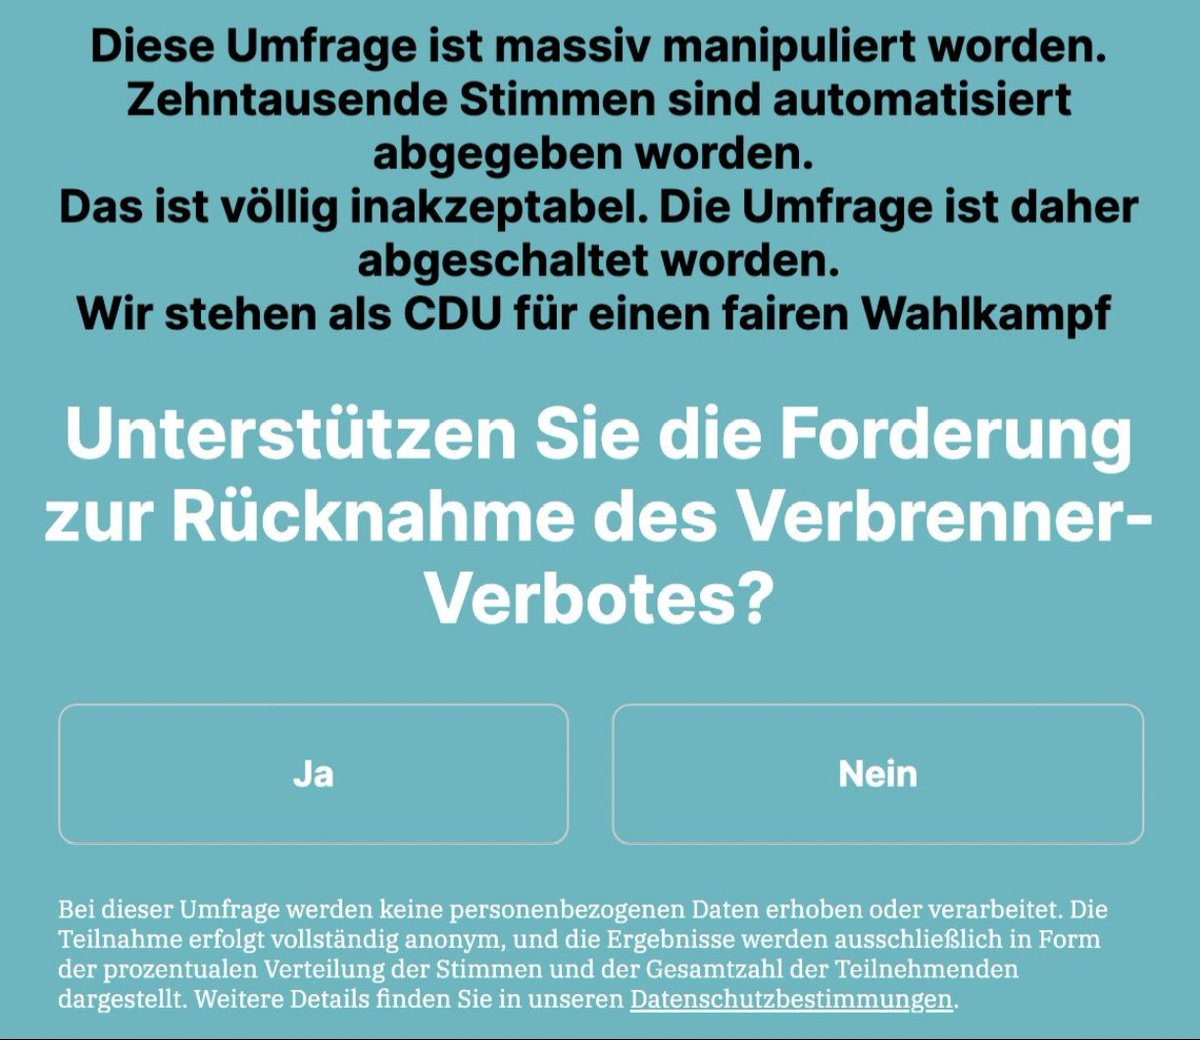 ❓Entweder das ist ein Lüge oder ein massiver Verstoß gegen die DSGVO @CDU. In jedem Fall ist es aber schon mal peinlich, unsouverän & inakzeptabel.